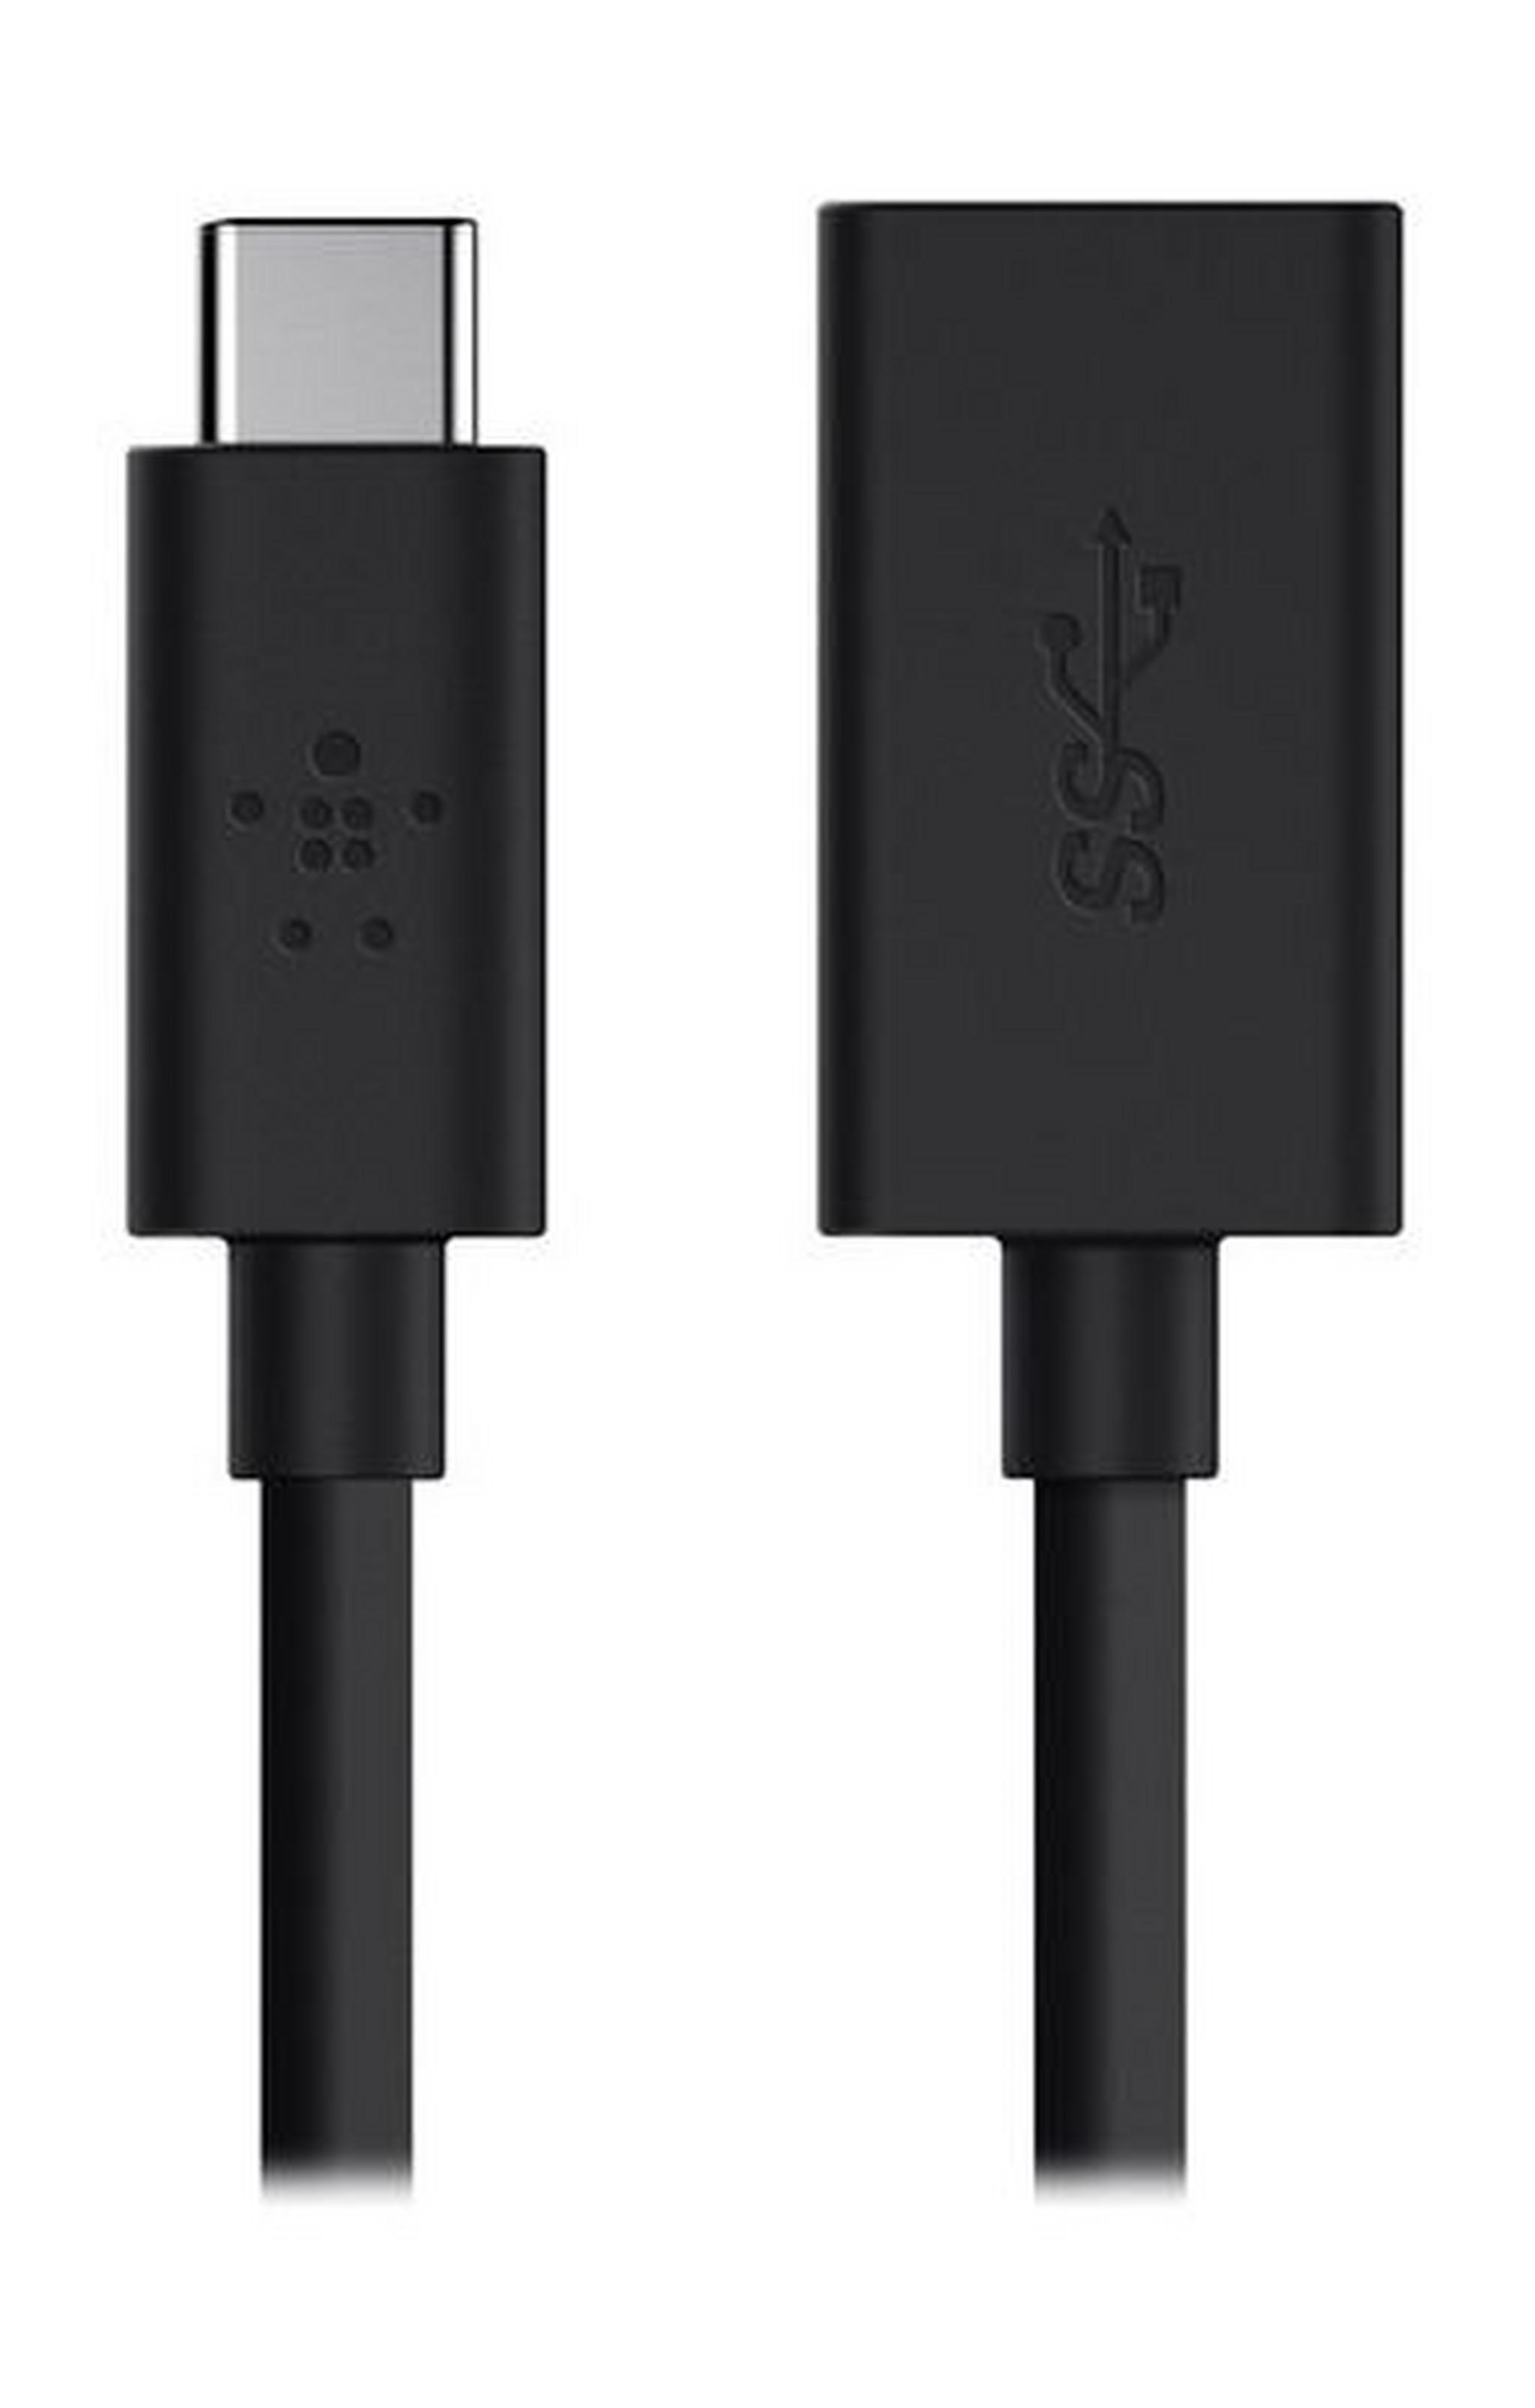 Belkin 3.0 USB-C to USB-A Adapter (F2CU036BT) - Black